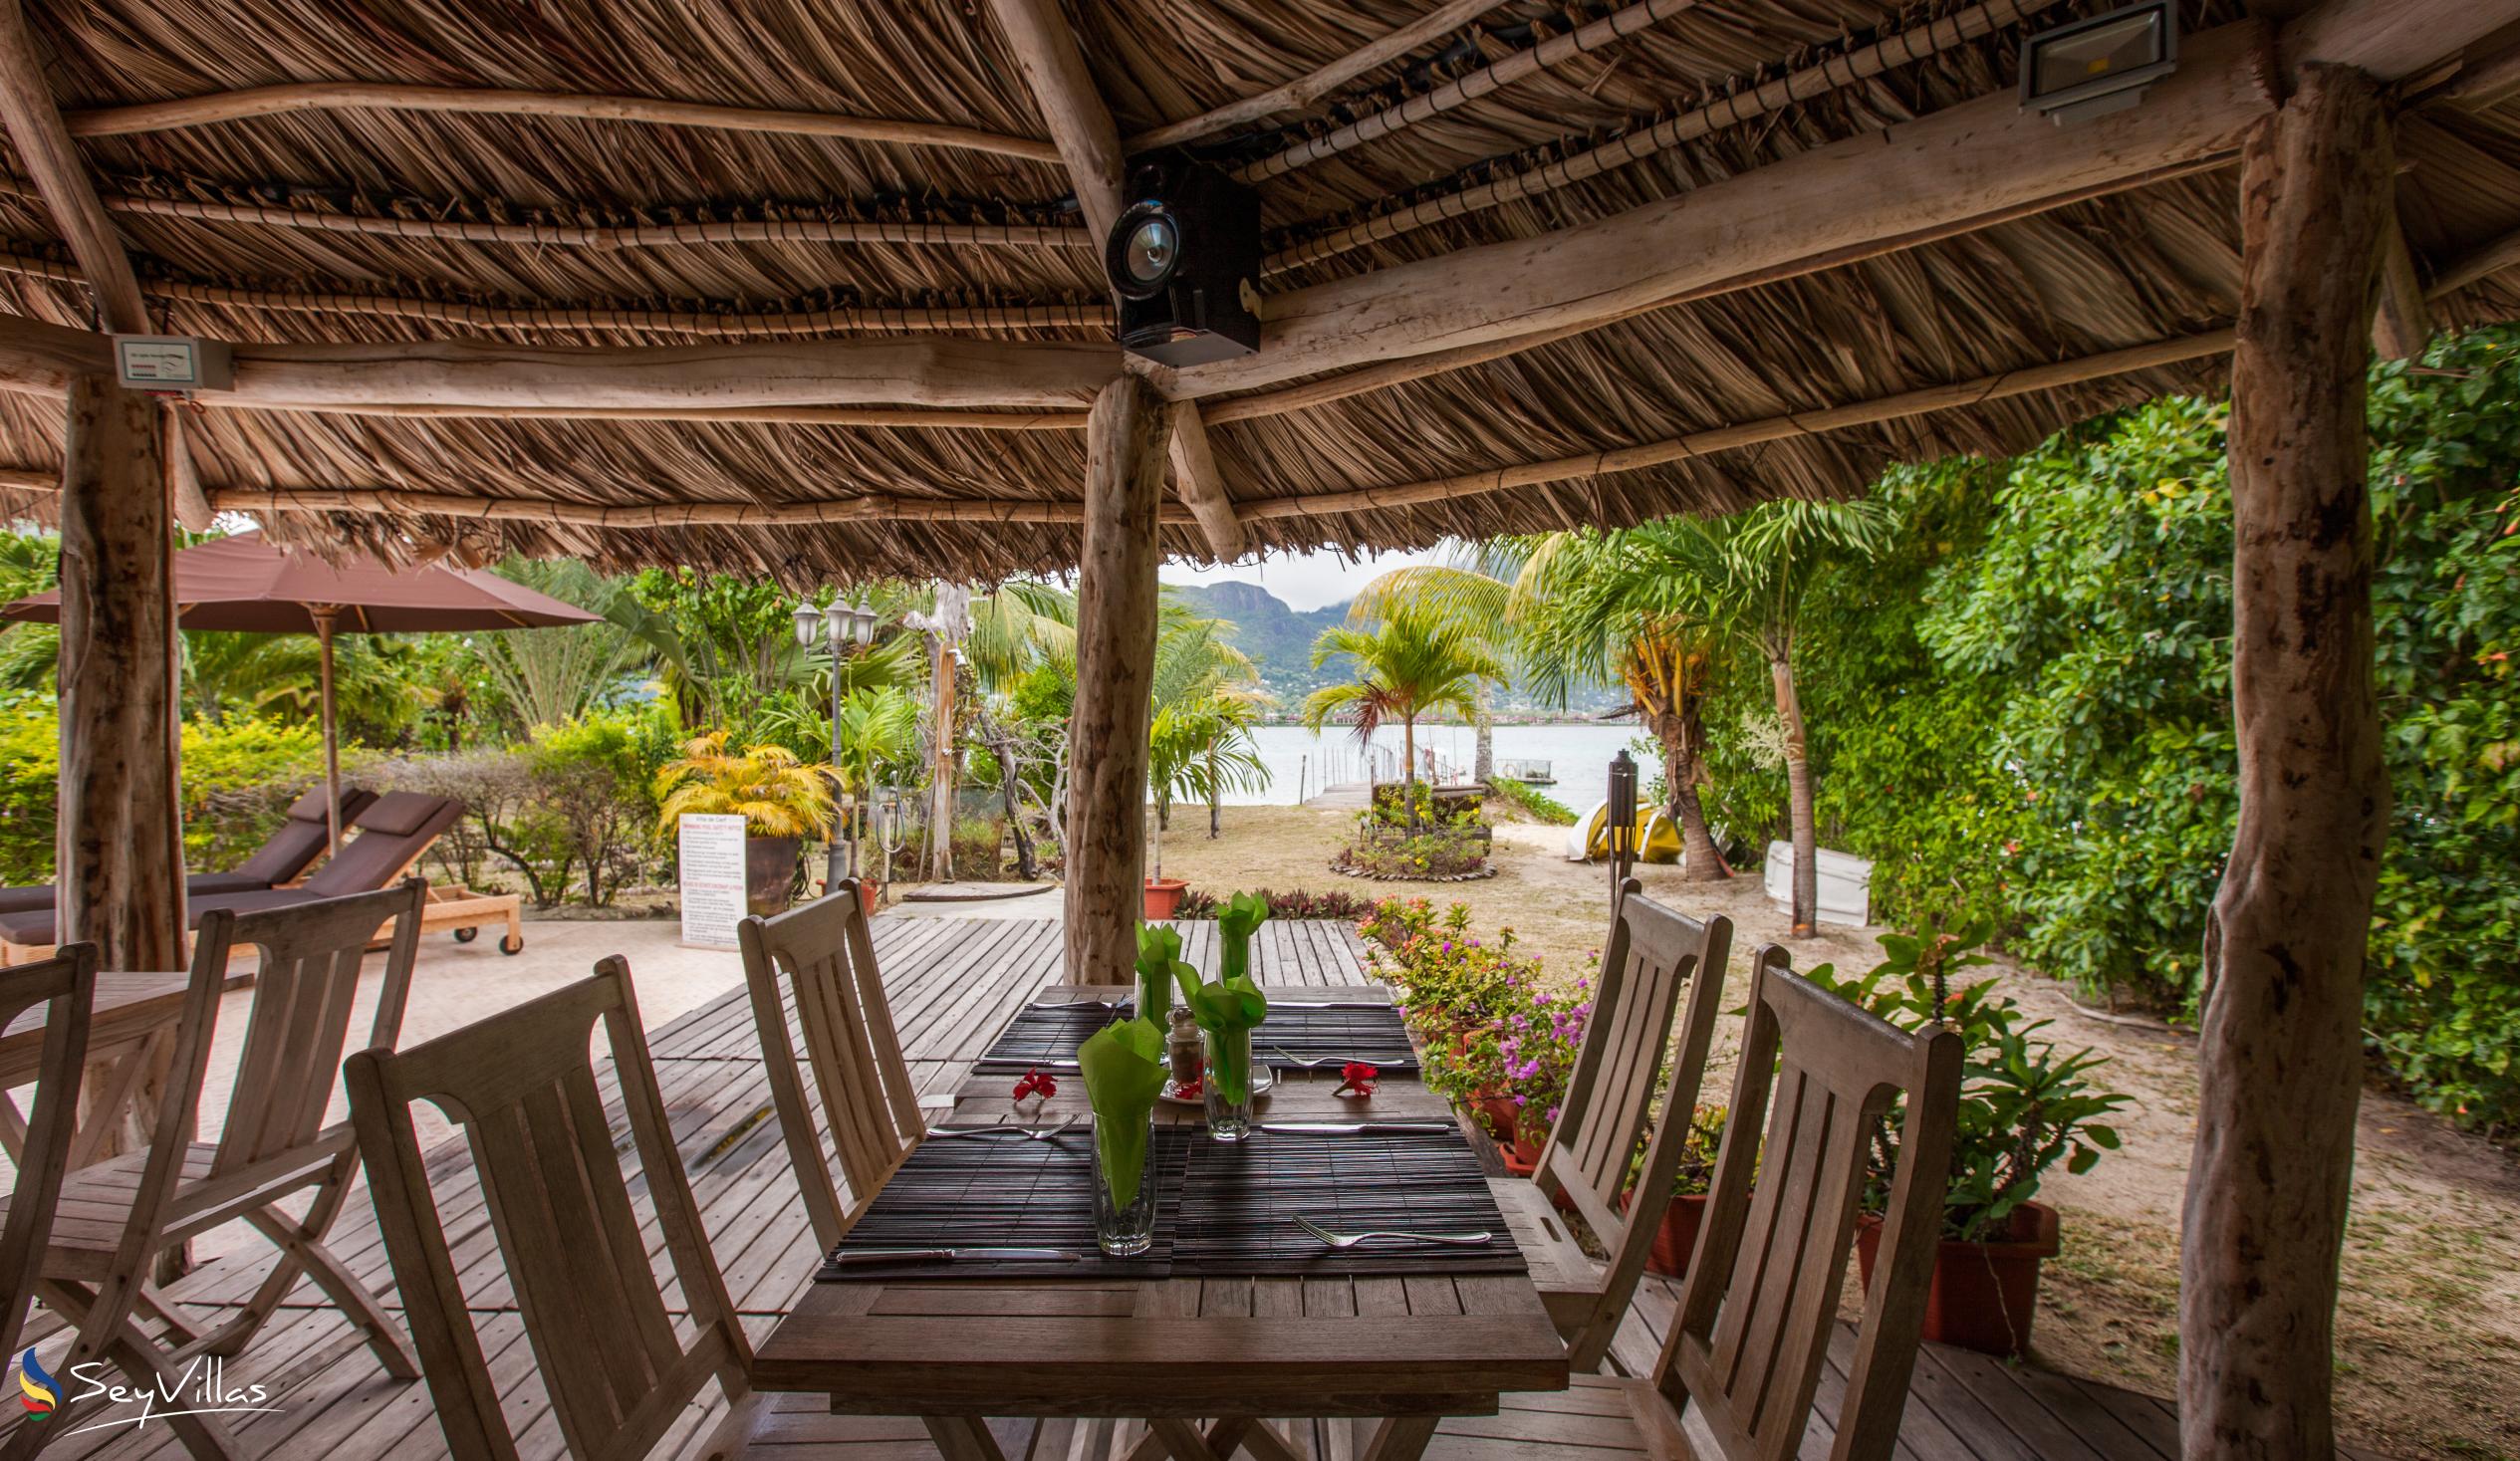 Foto 21: Villa de Cerf - Innenbereich - Cerf Island (Seychellen)